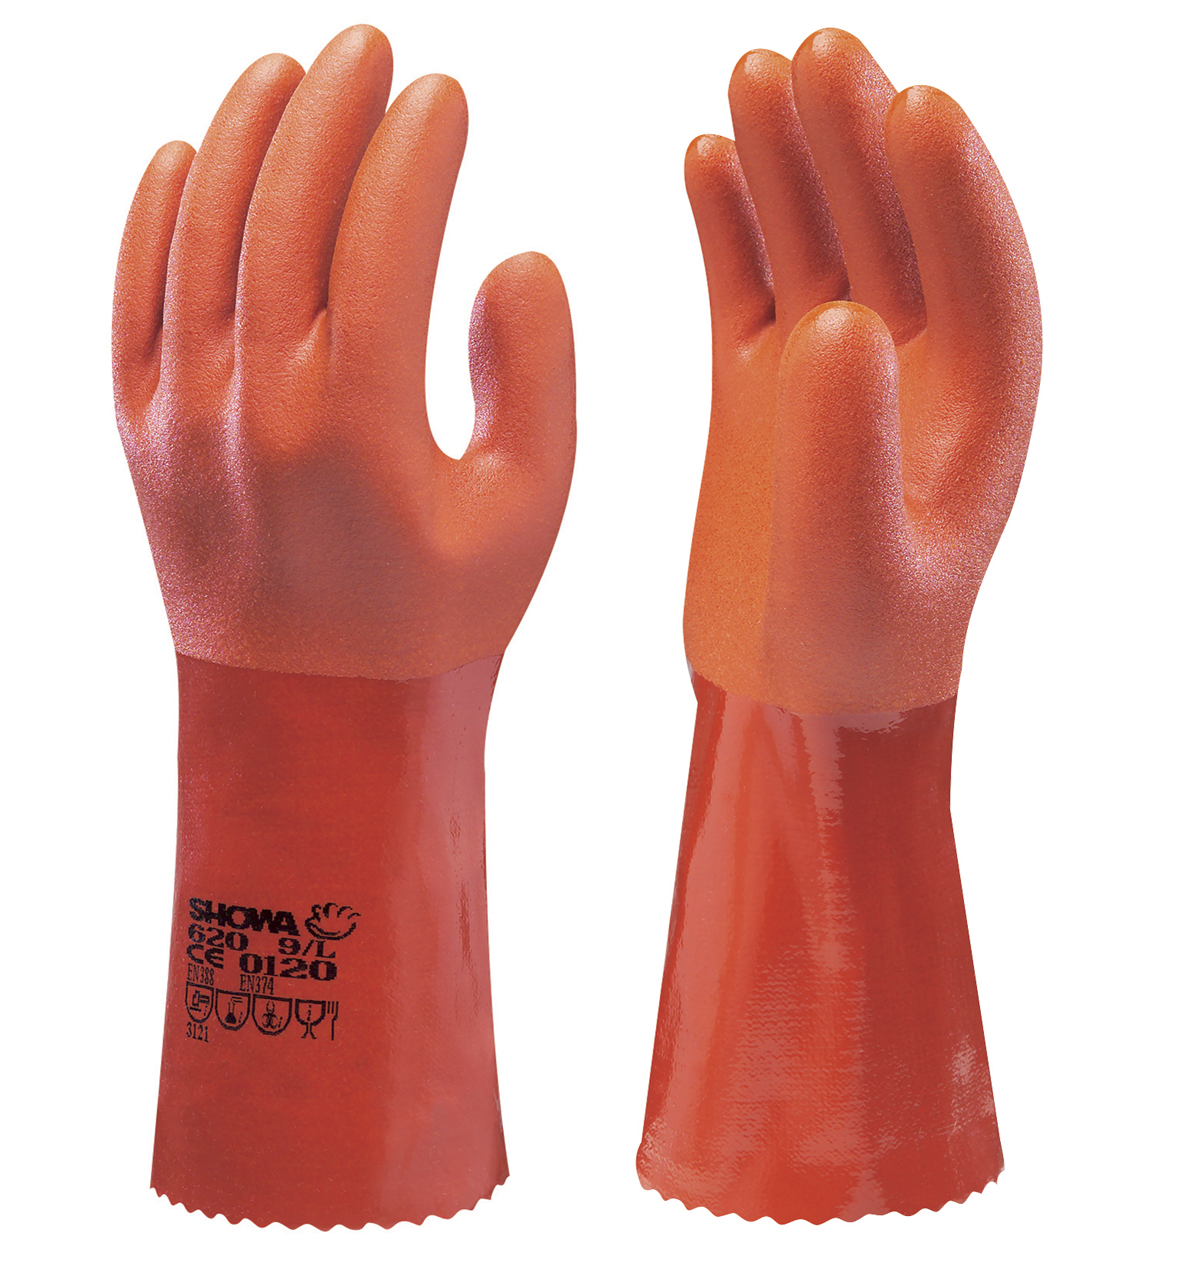 Showa 620 orange handsker - SikkerhedsGiganten